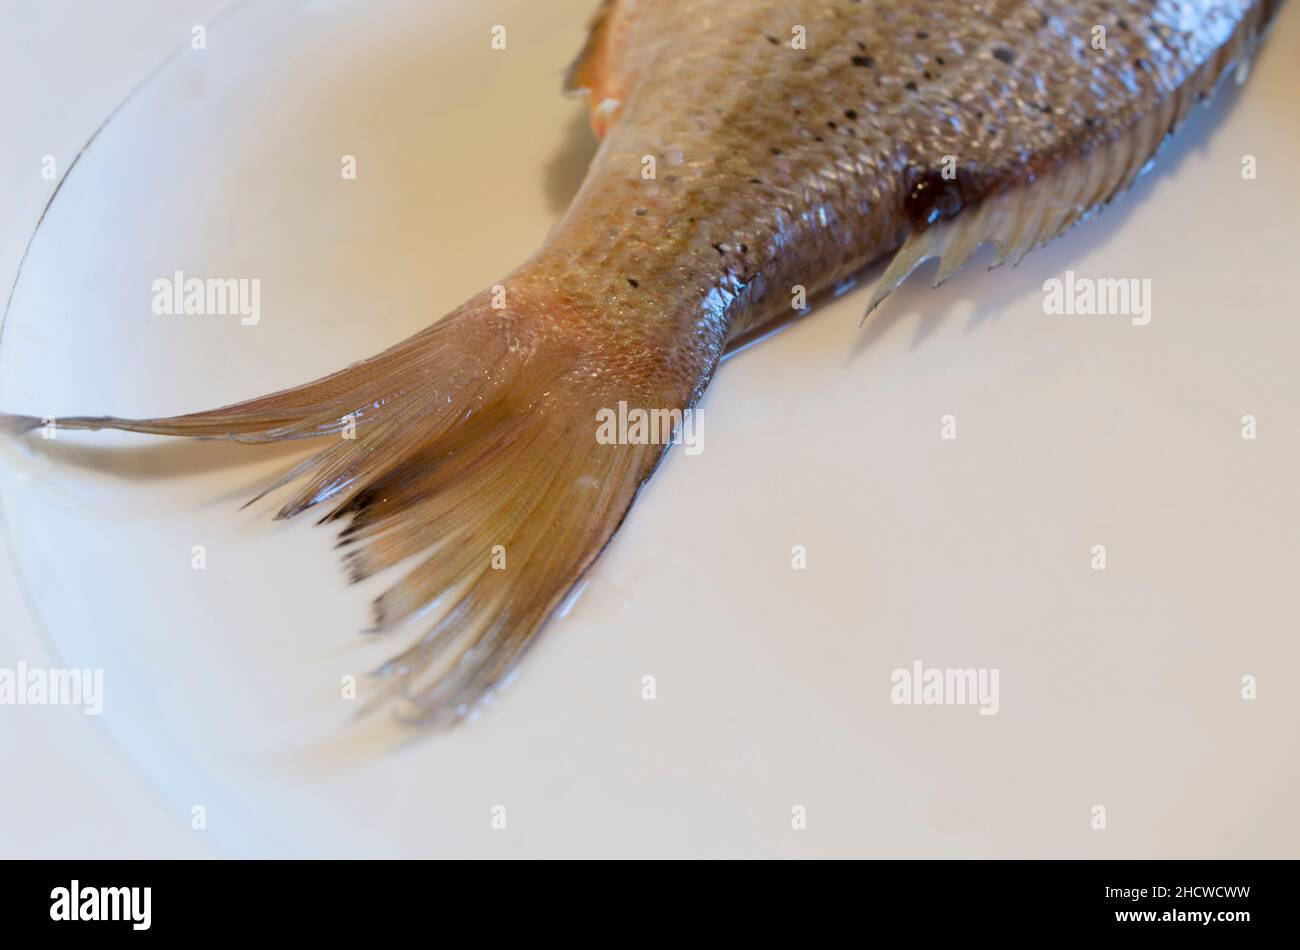 Schwanz von rohem Salzwasserfisch Dentex Dentex, gemeiner Dentex auf einem weißen Teller, roher Fisch aus der Adria, dalmatinische Küche Stockfoto